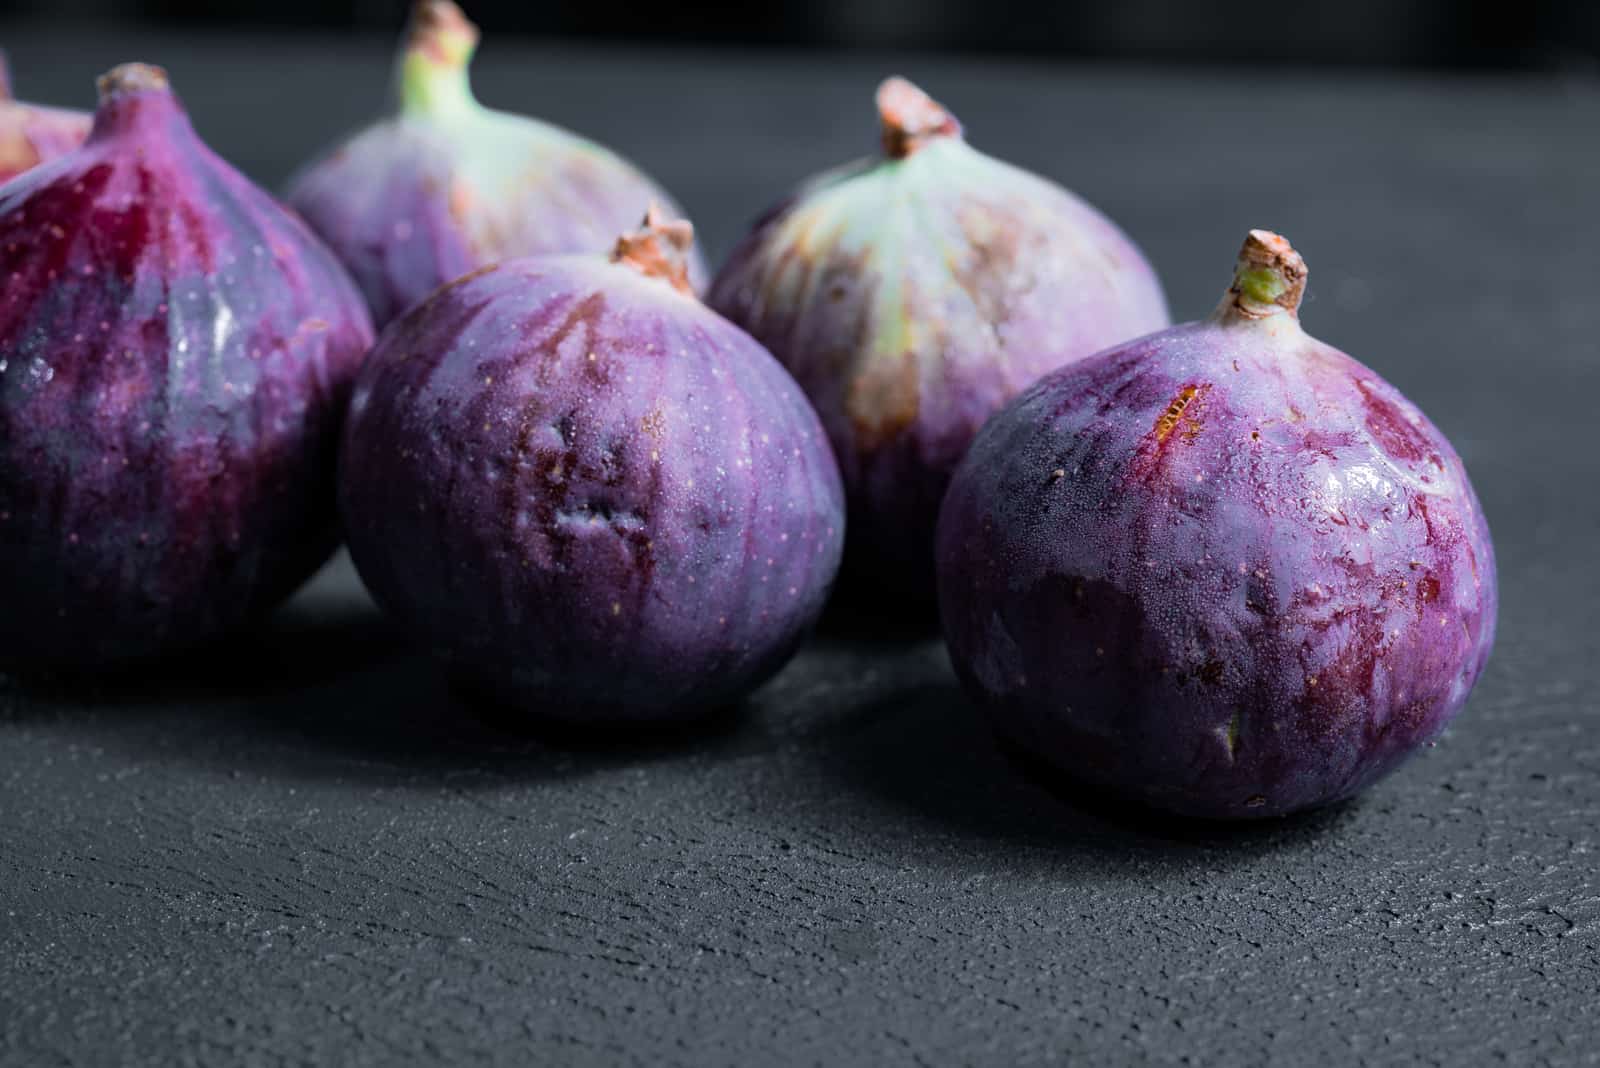 figs on dark background